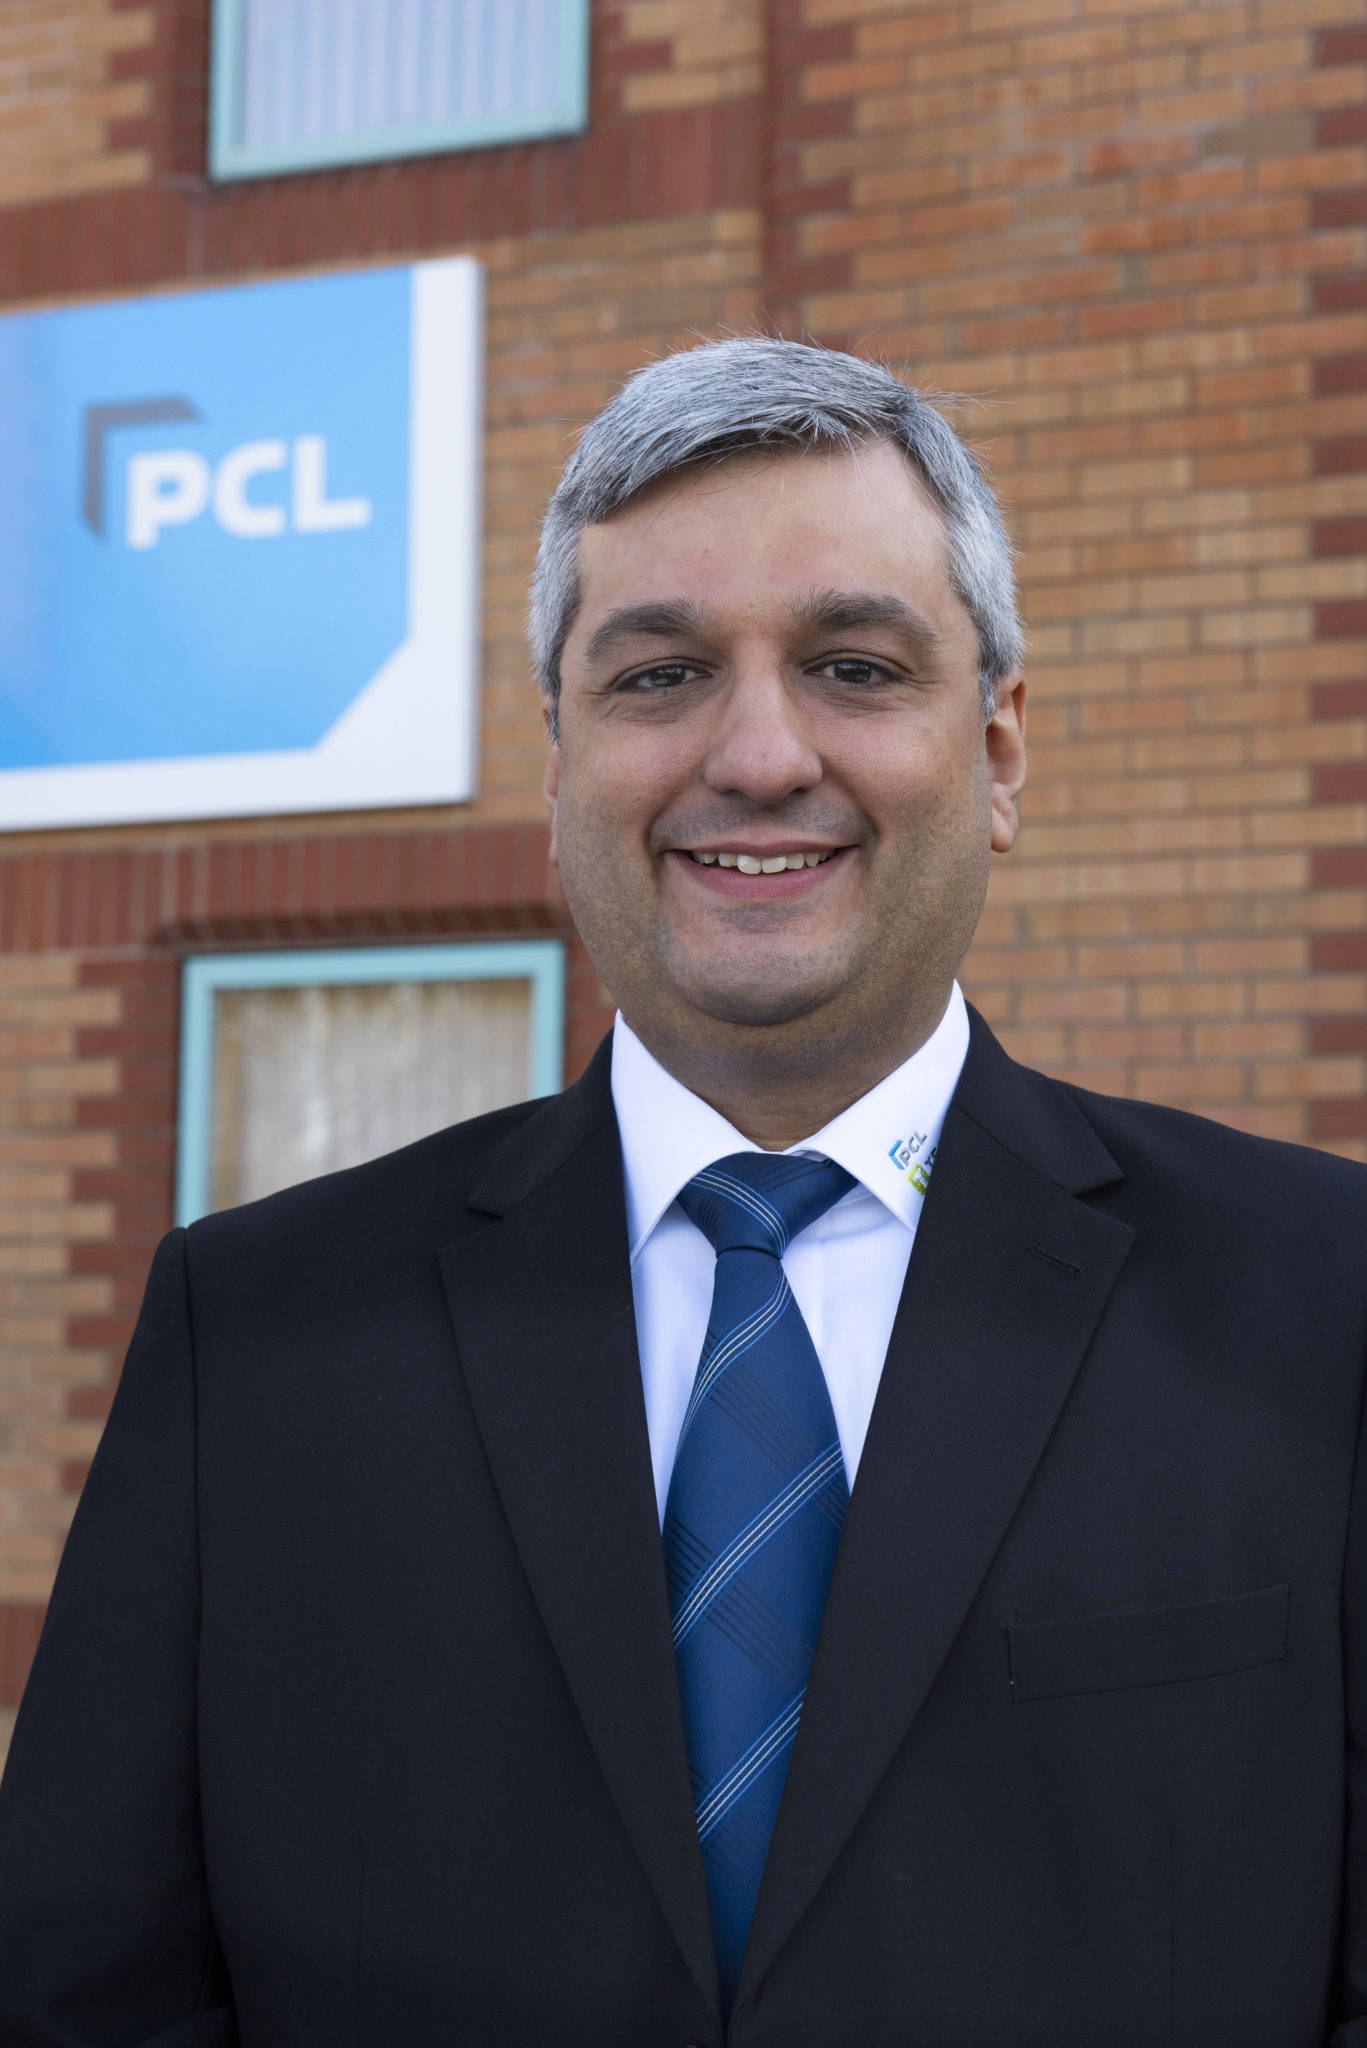 José Delgado, PCL’s new Export Manager